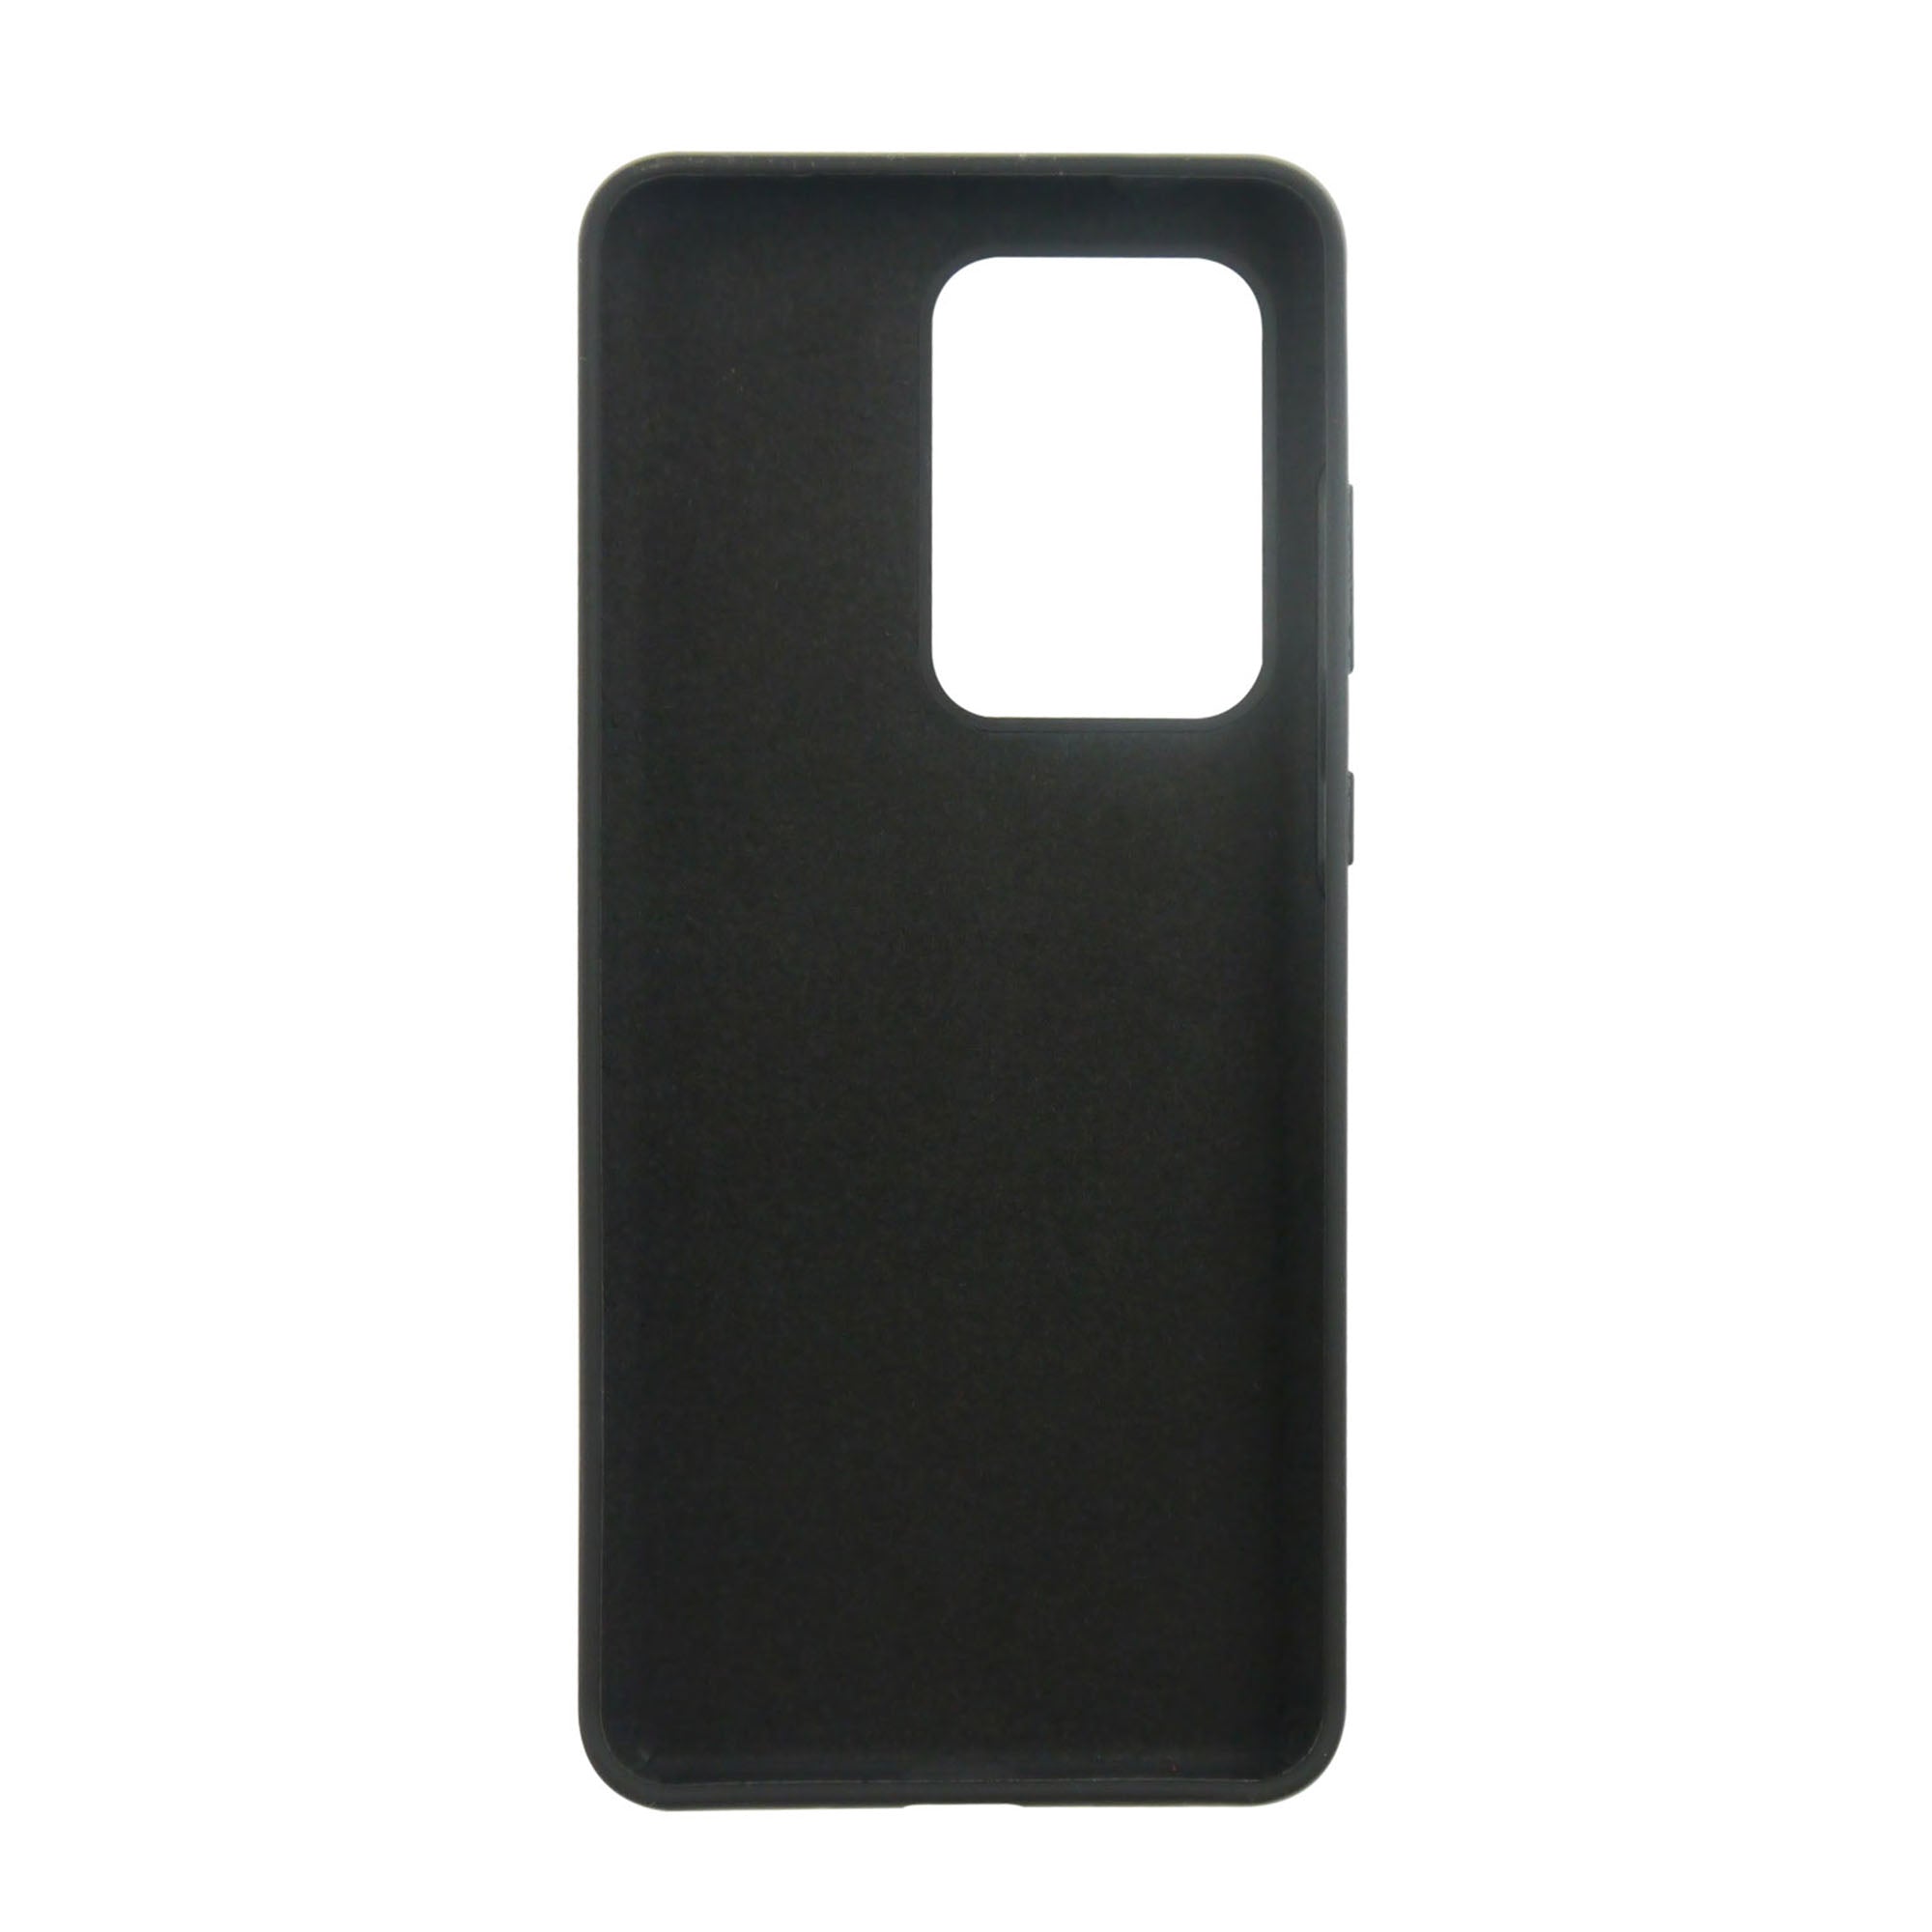 Samsung Galaxy S20 Ultra 5G Uunique Black Liquid Silicone Case - 15-06634